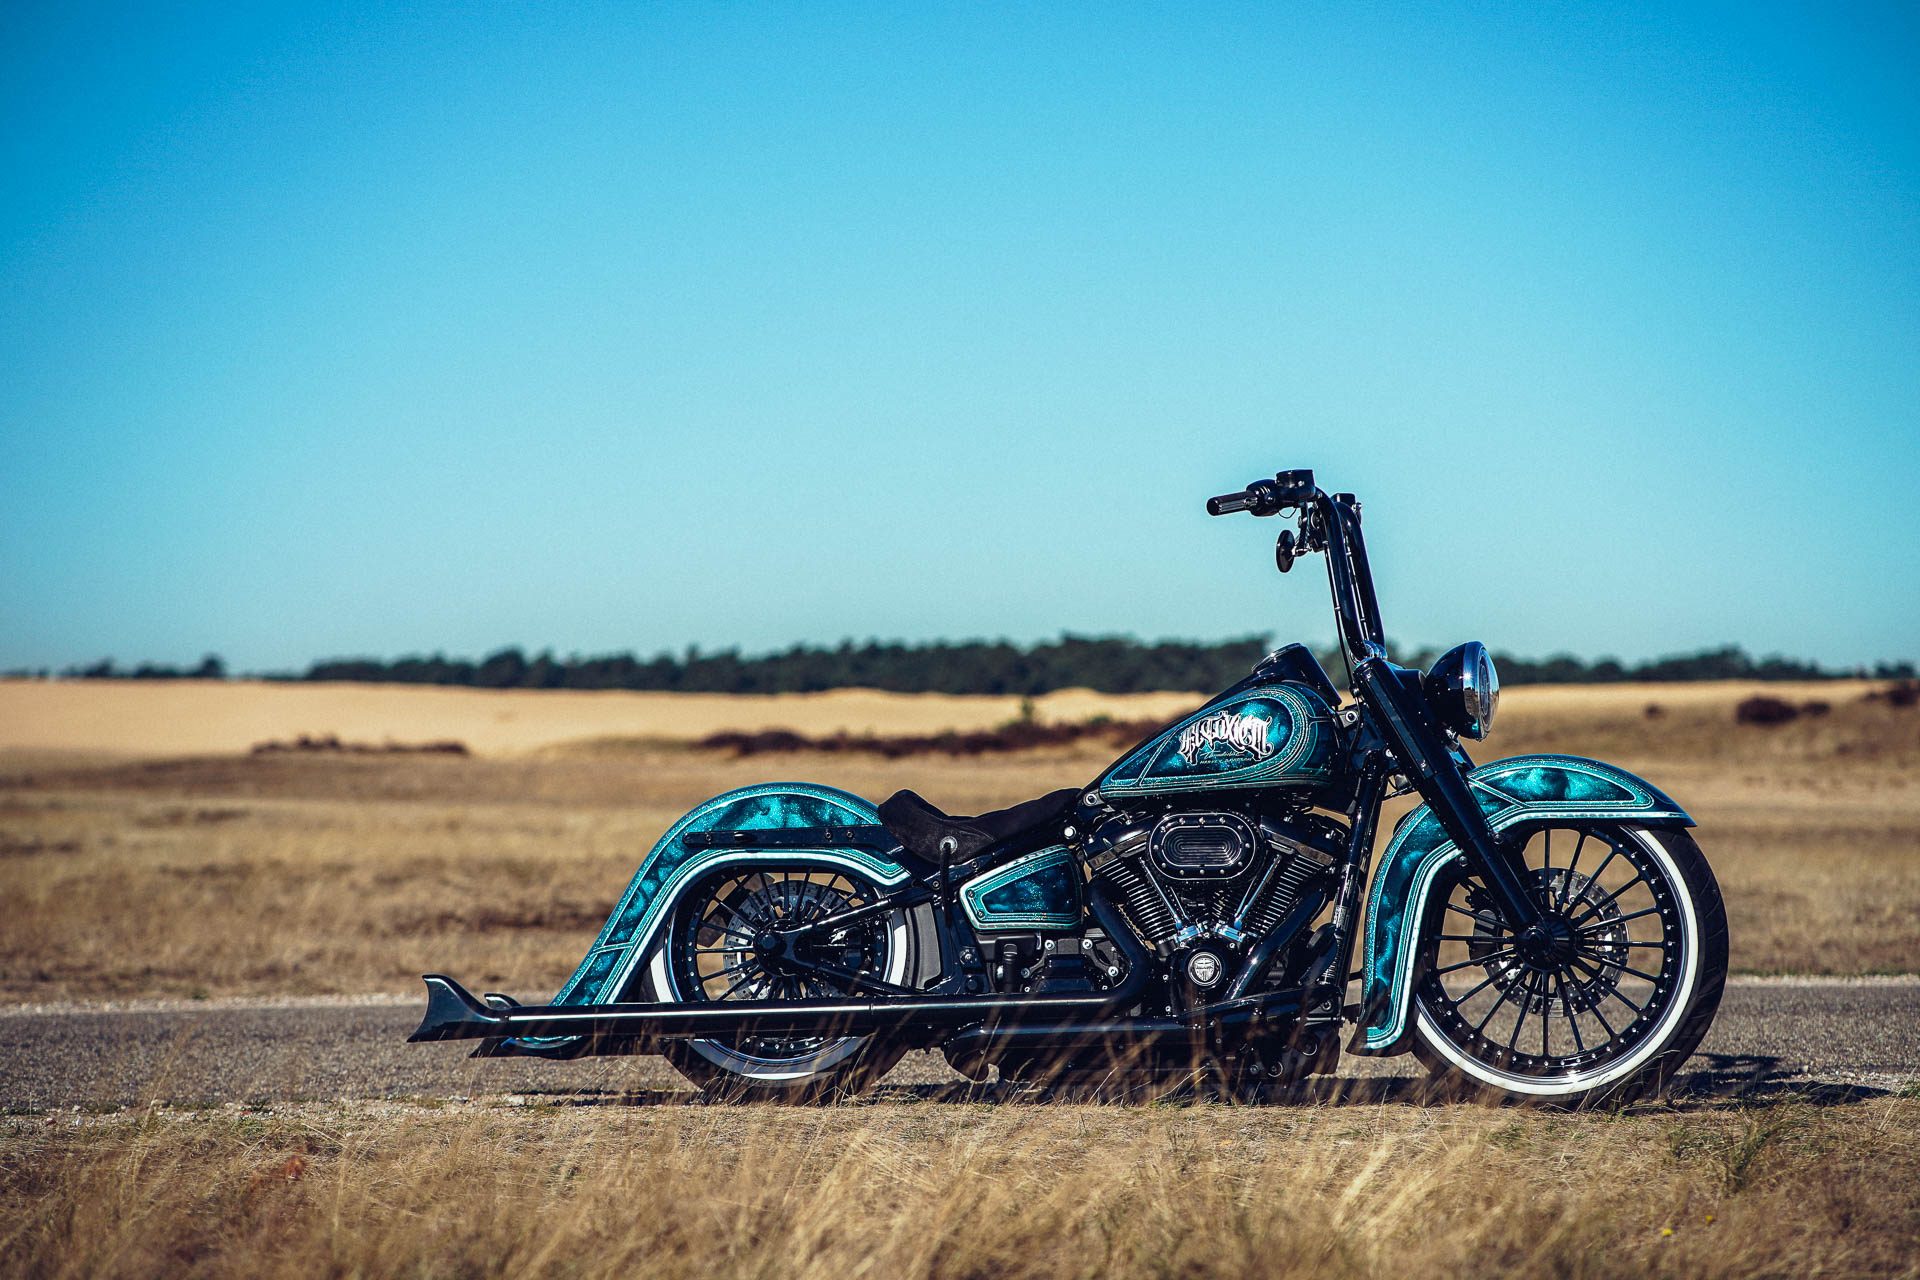 El Toxico customized Thunderbike Harley-Davidson Heritage by Ben Ott